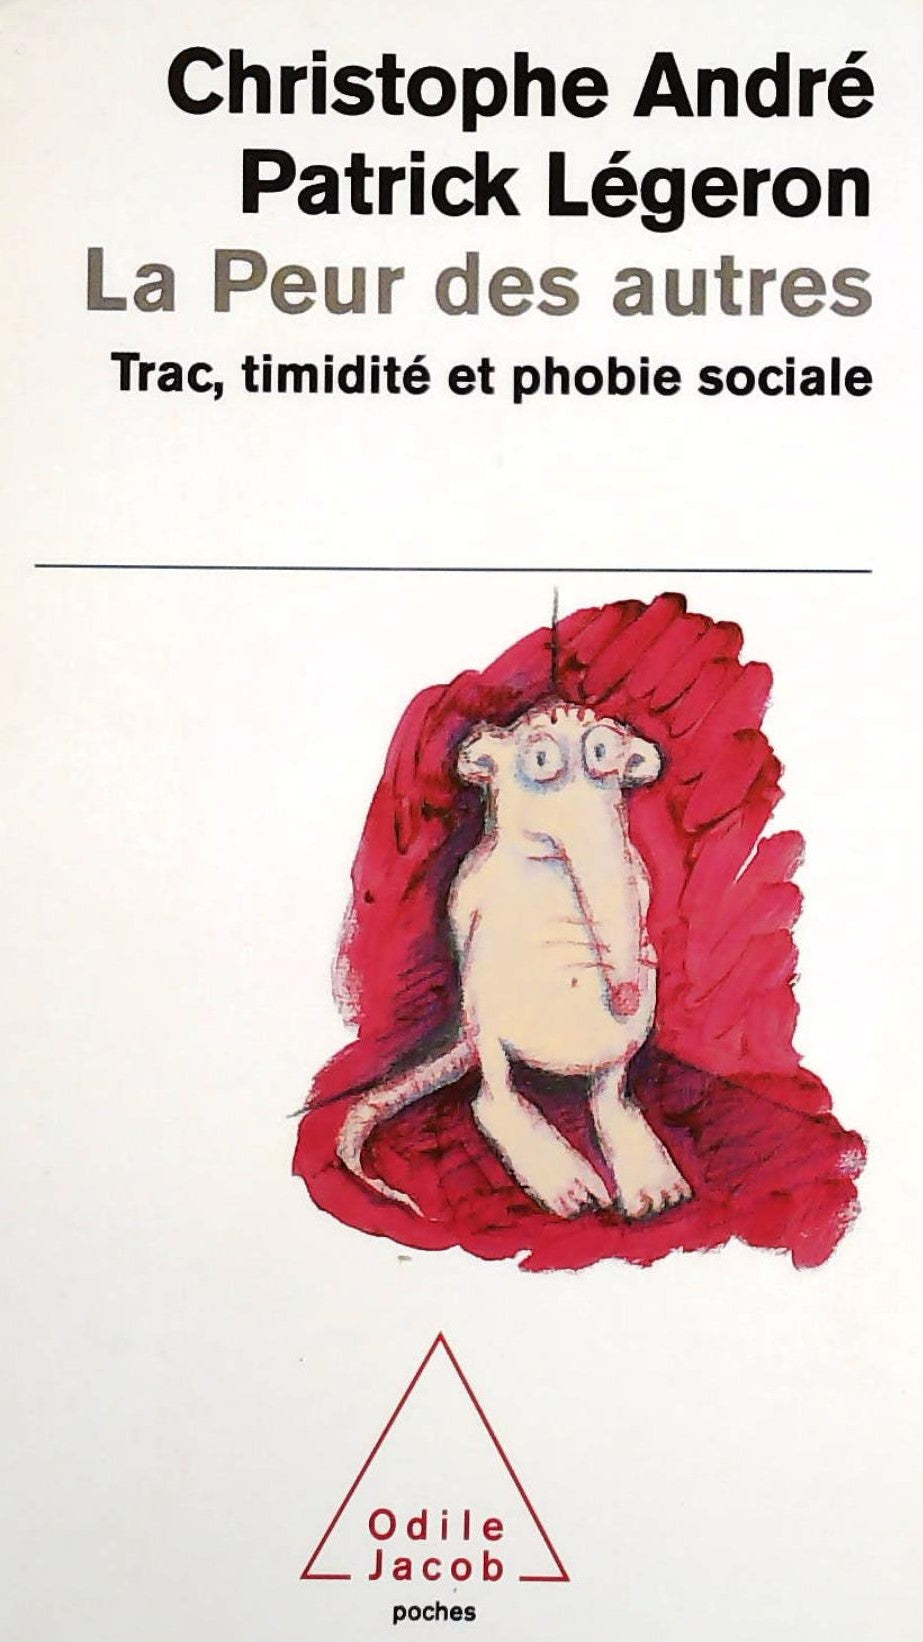 Livre ISBN 2738112366 La peur des autres : Trac, timidité et phobie sociale (Christophe André)